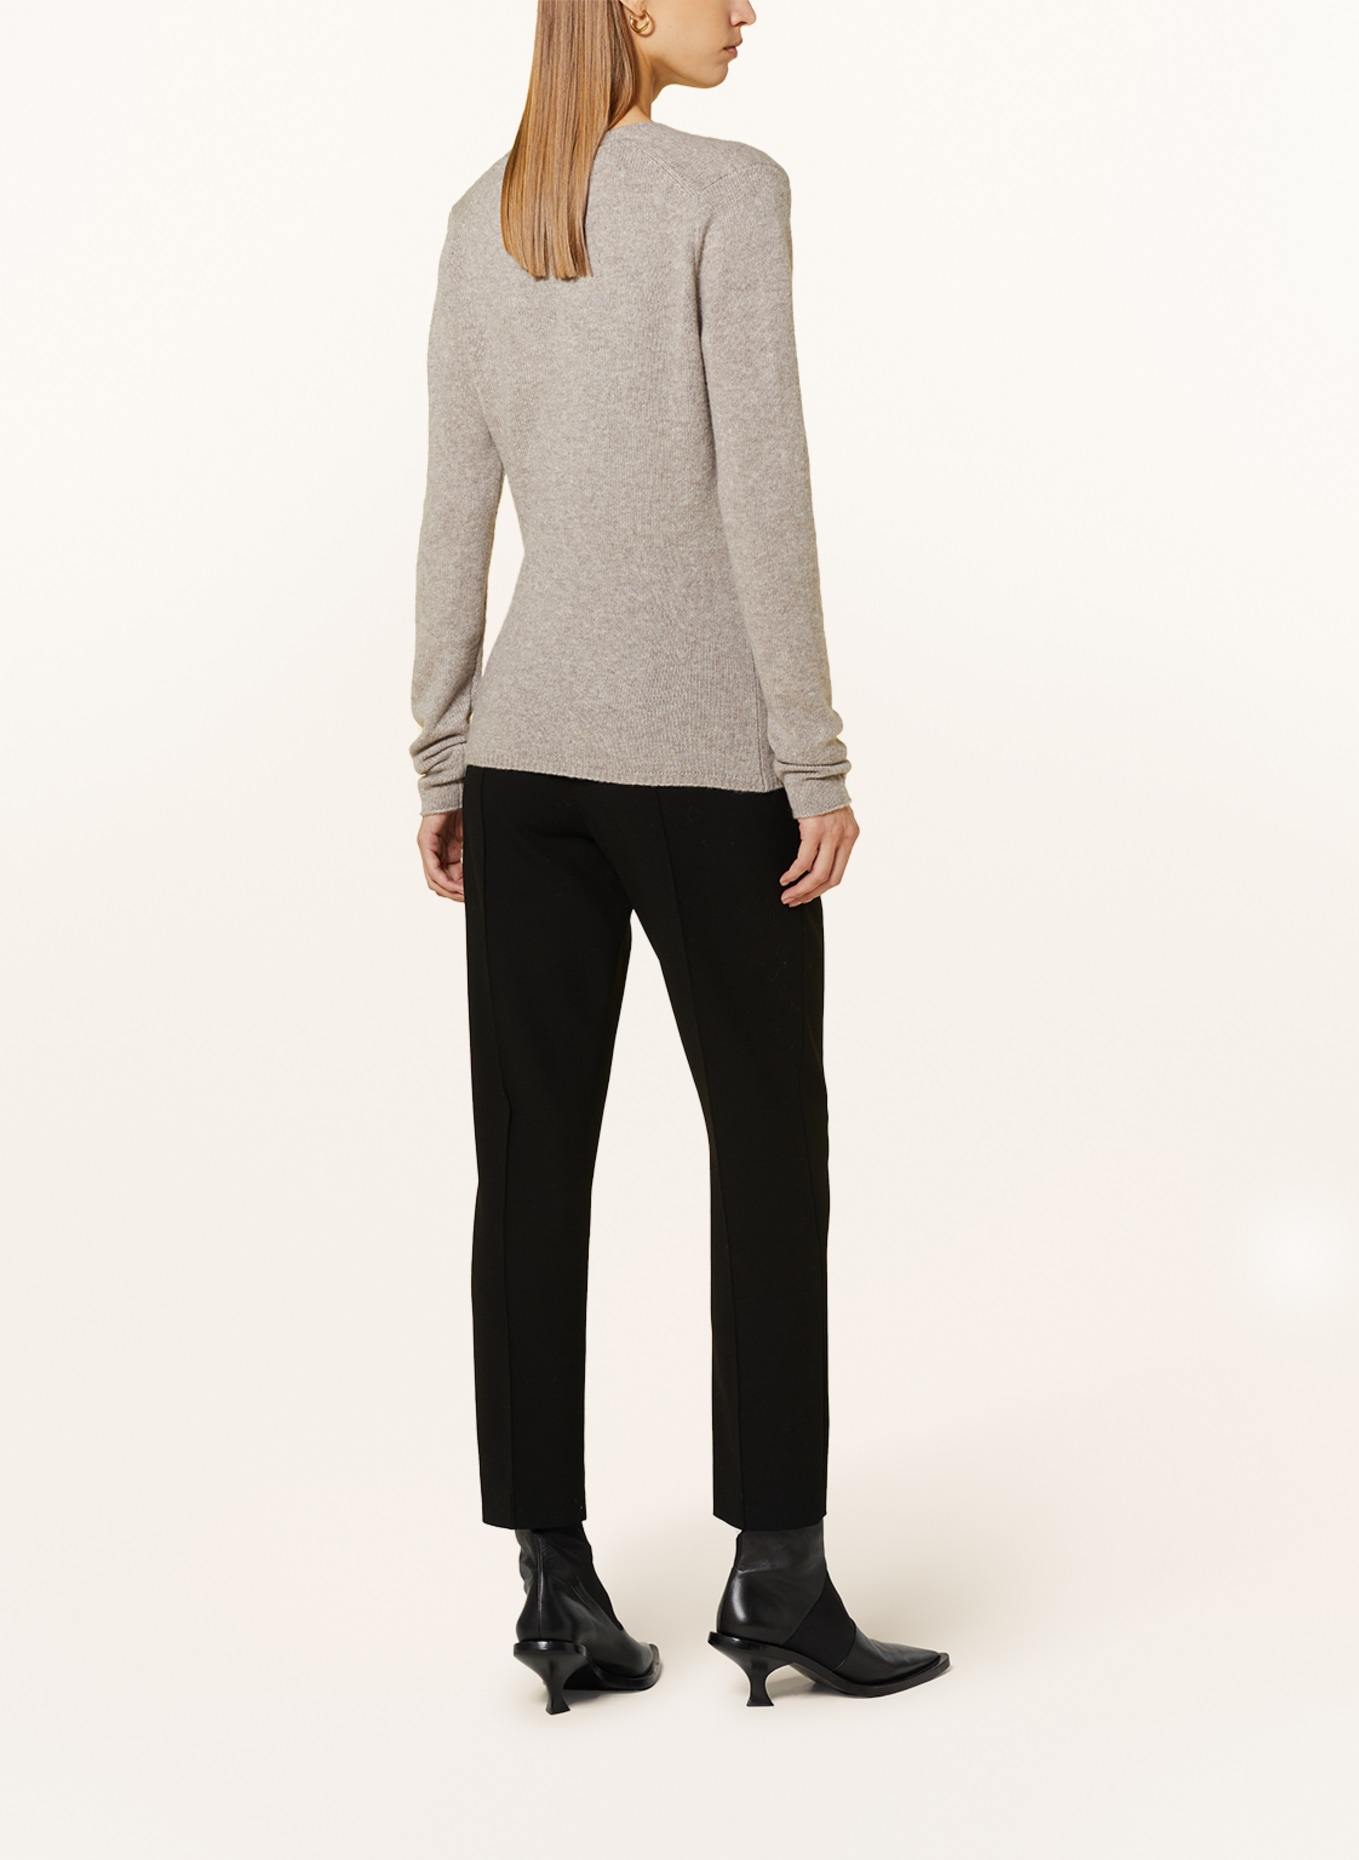 IRIS von ARNIM Cashmere sweater SUZETTE, Color: BEIGE (Image 3)